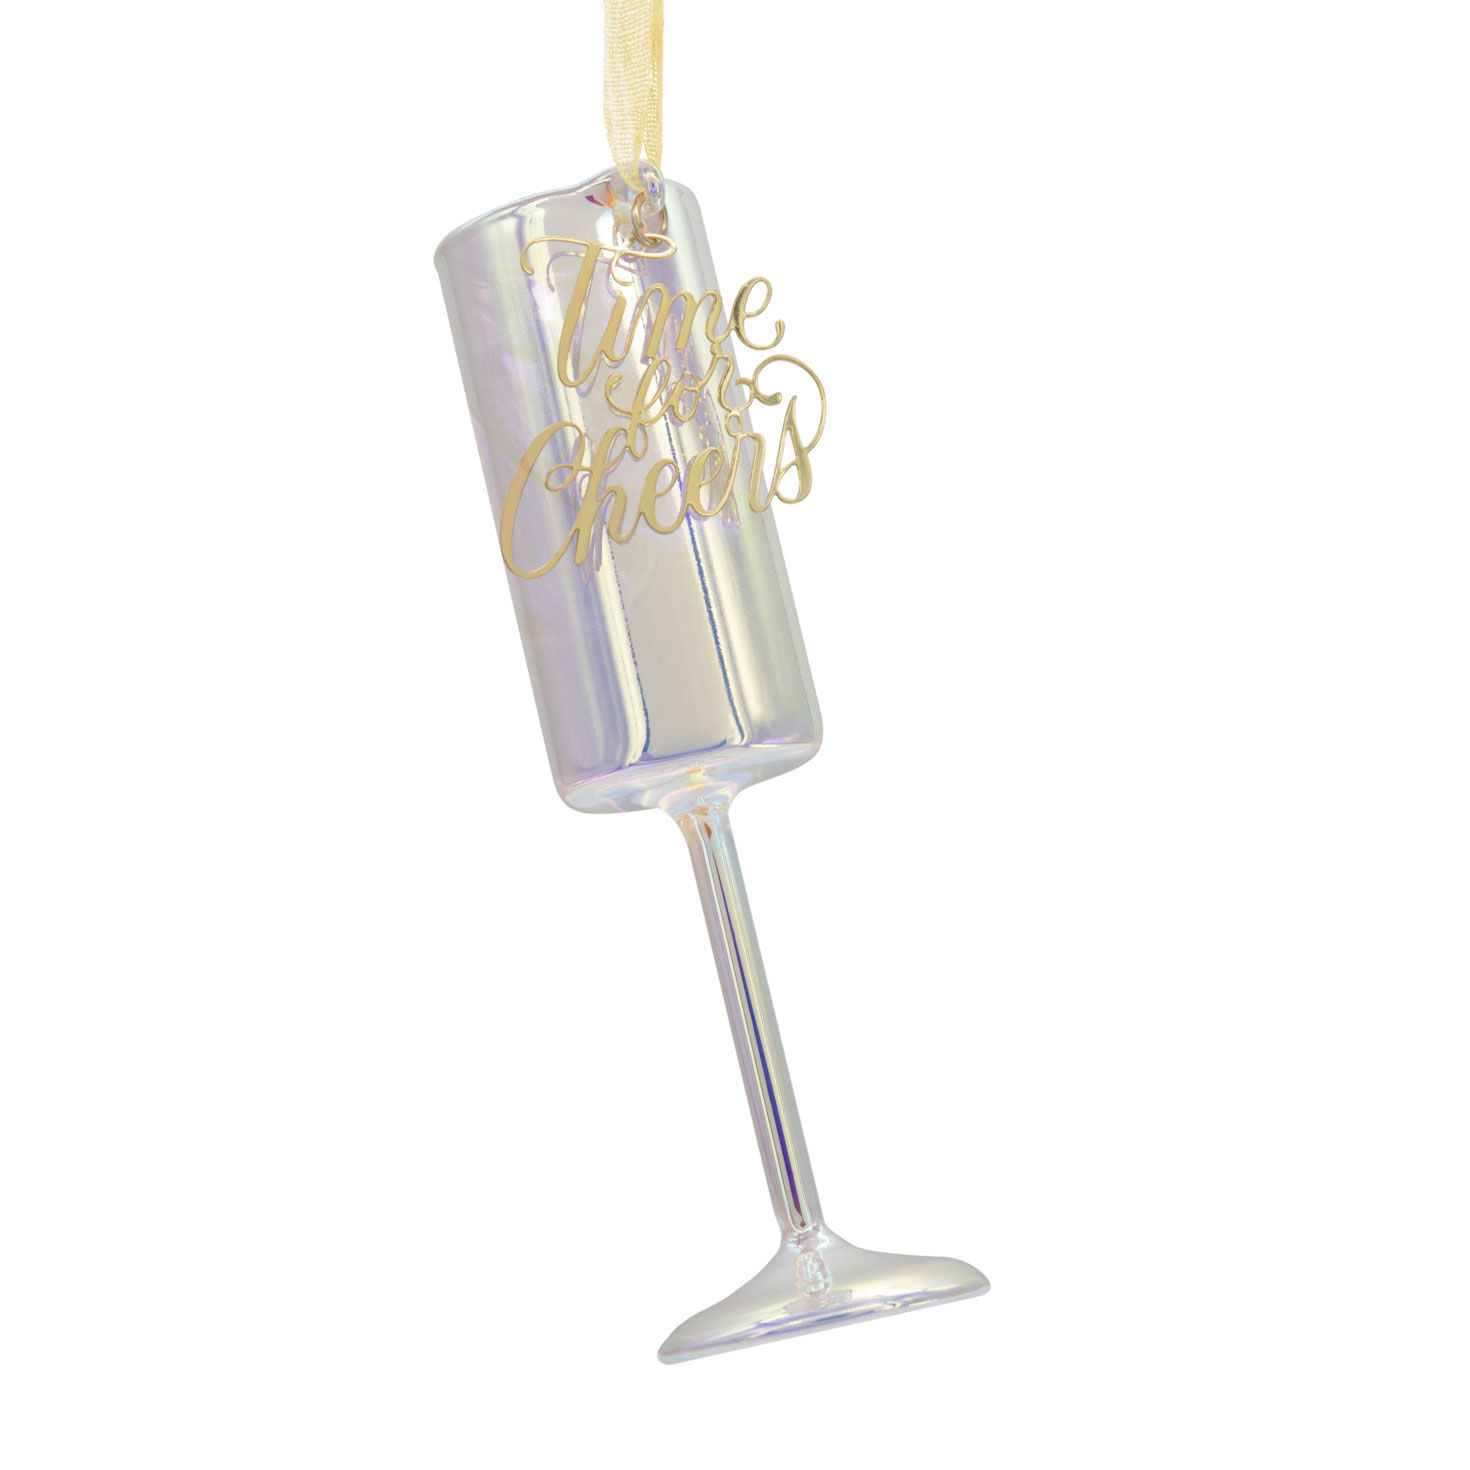 Signature Champagne Flute Premium Blown Glass Hallmark Ornament - Specialty  Ornaments - Hallmark